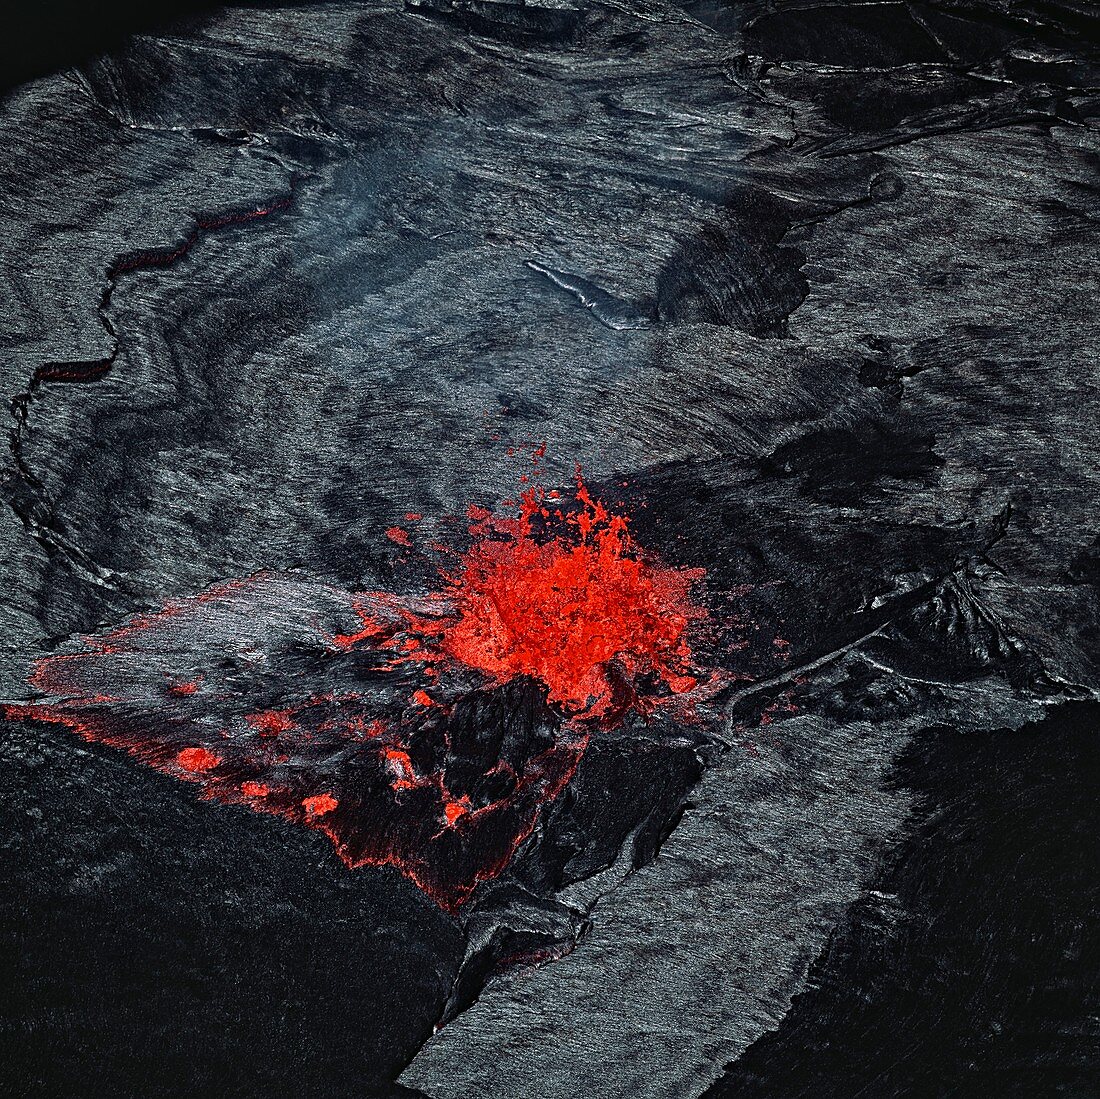 Lava fountain,Erta Ale volcano,Ethiopia